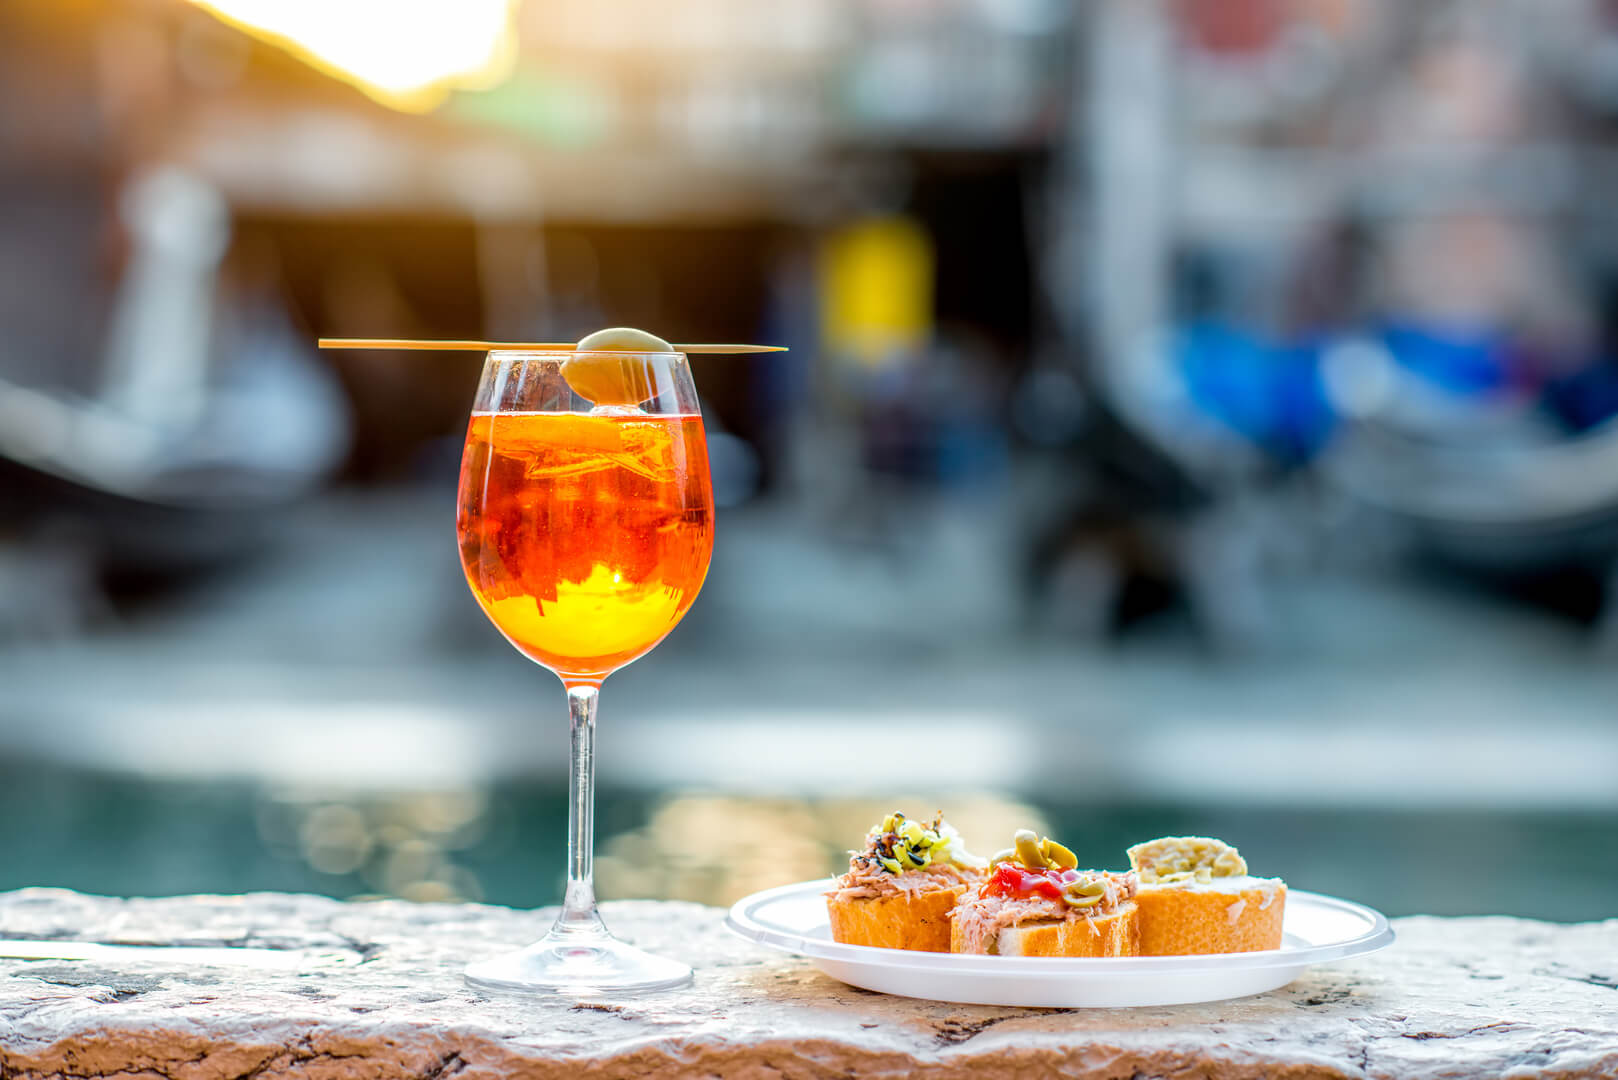 Spritz Aperol et snacks traditionnels vénitiens cicchetti sur fond de chanal à Venise. Apéritif italien traditionnel. Image avec une petite profondeur de champ.